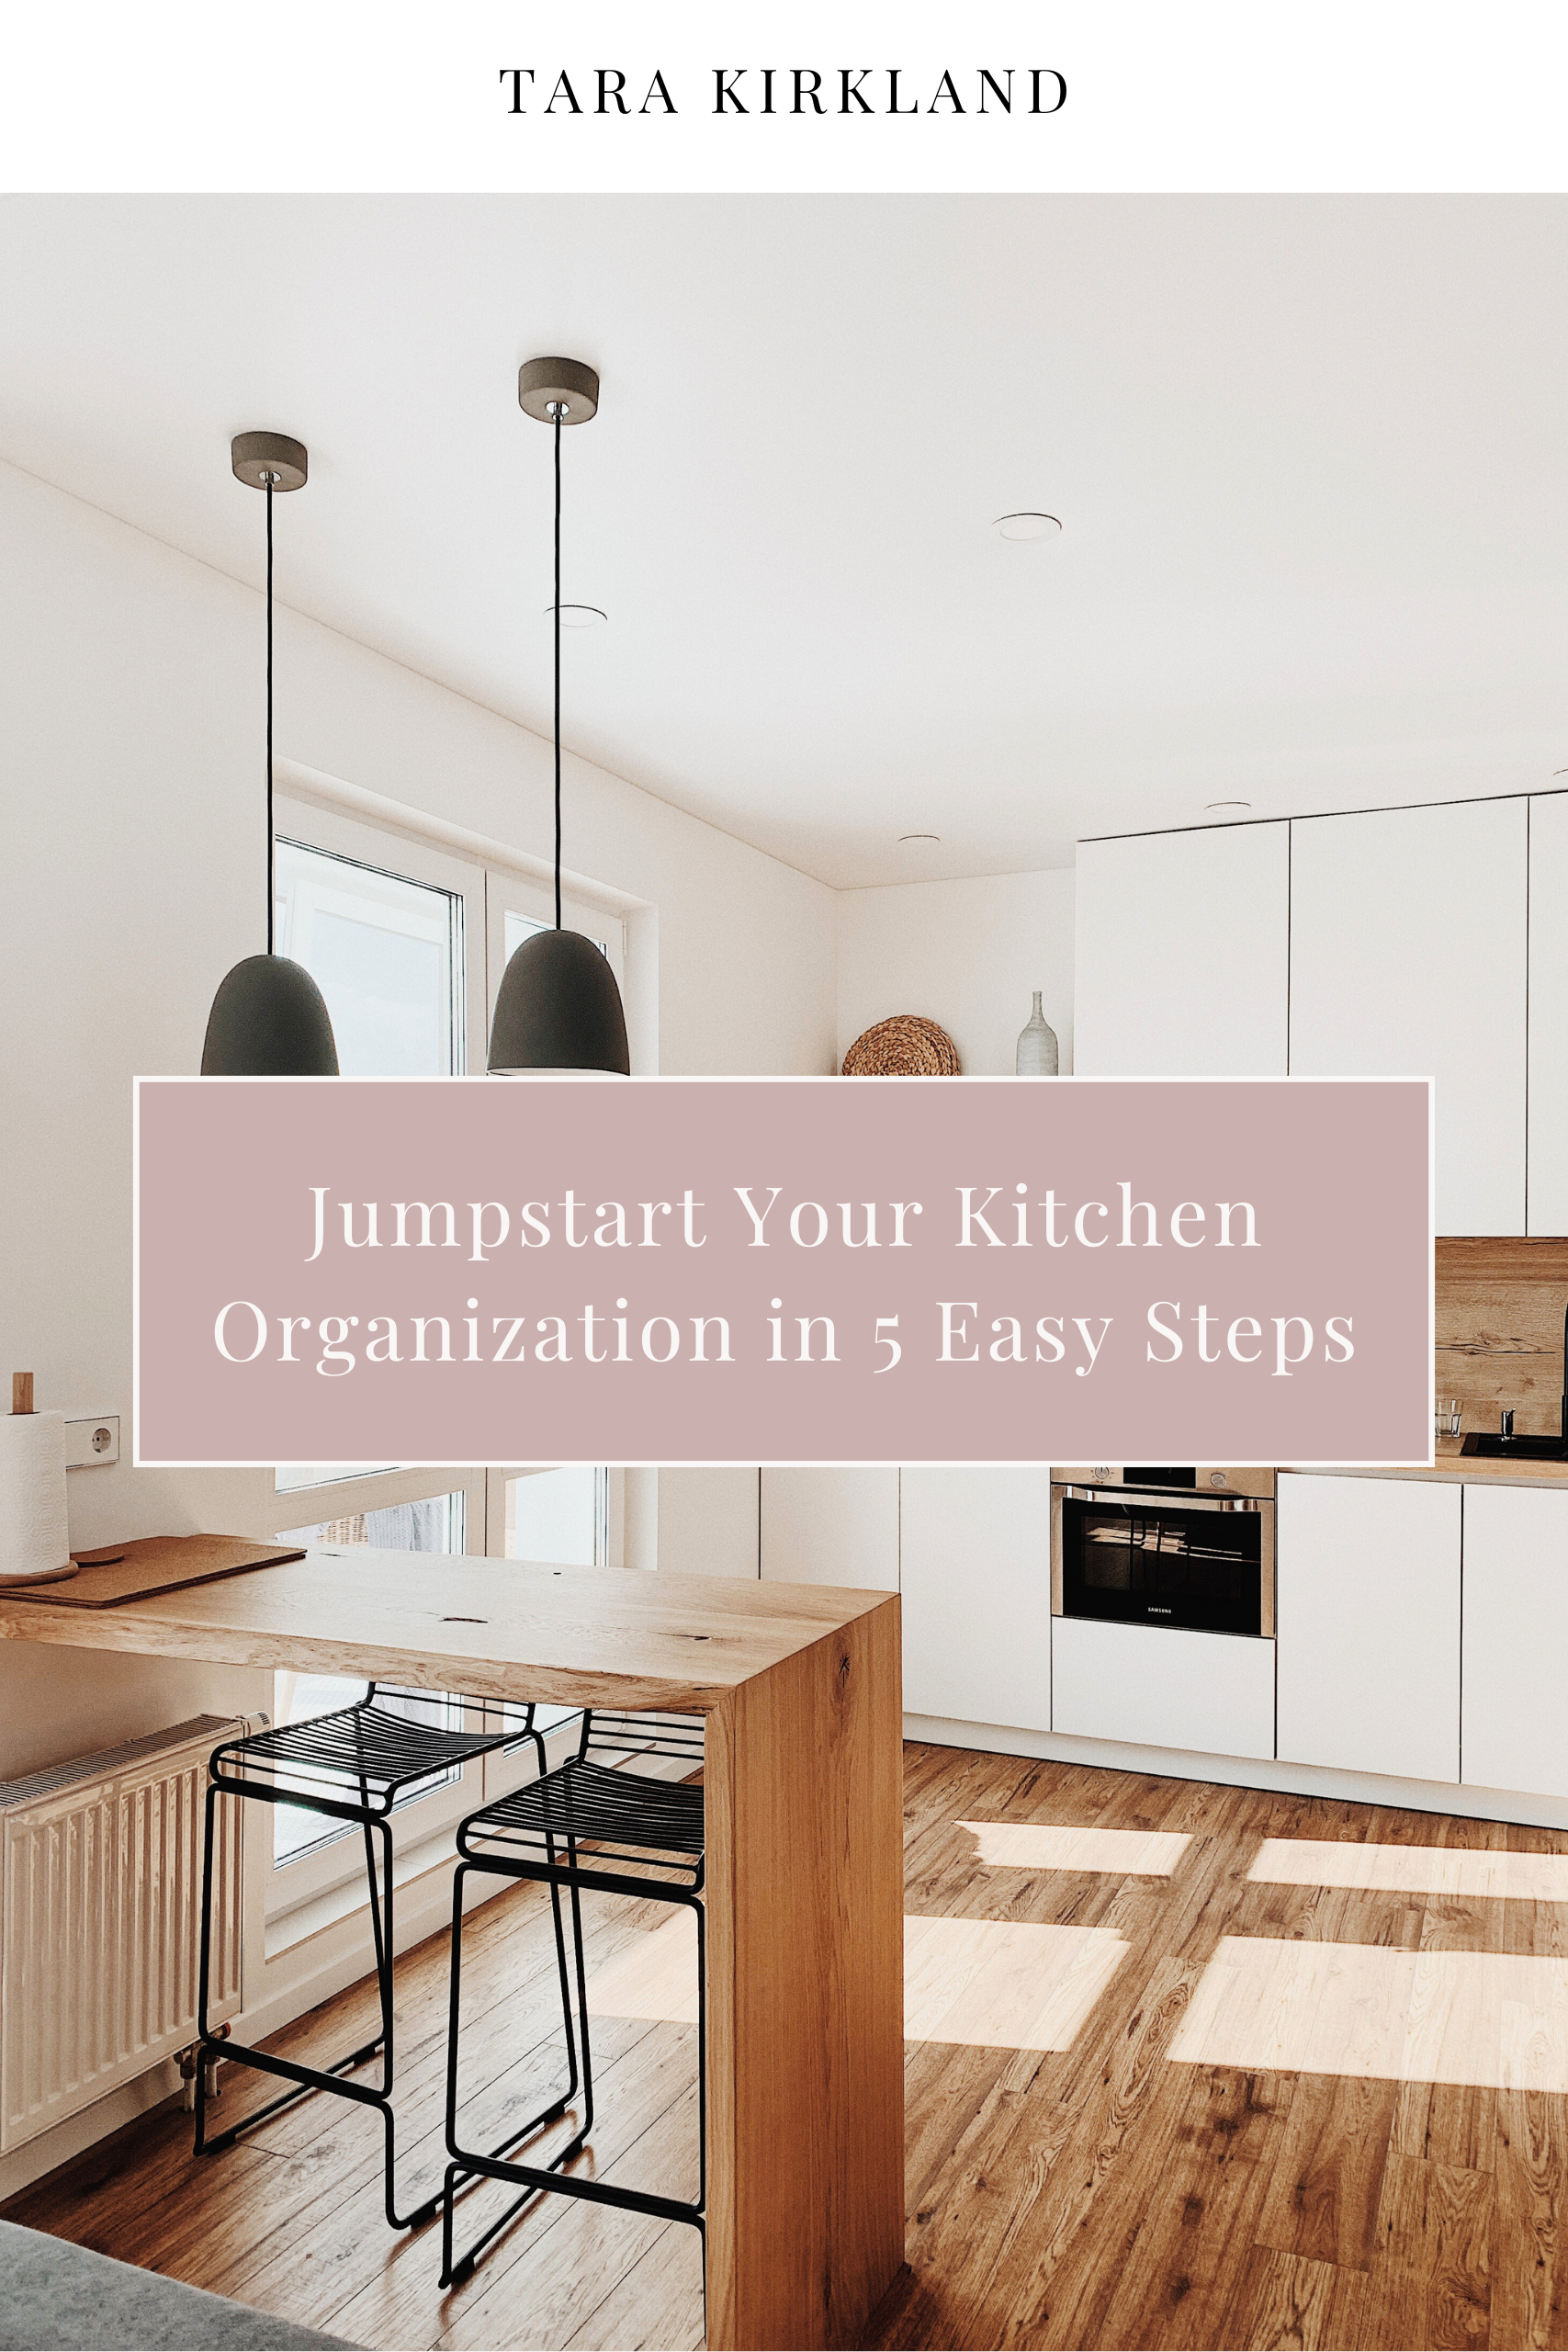 Jumpstart Your Kitchen Organization in 5 Easy Steps